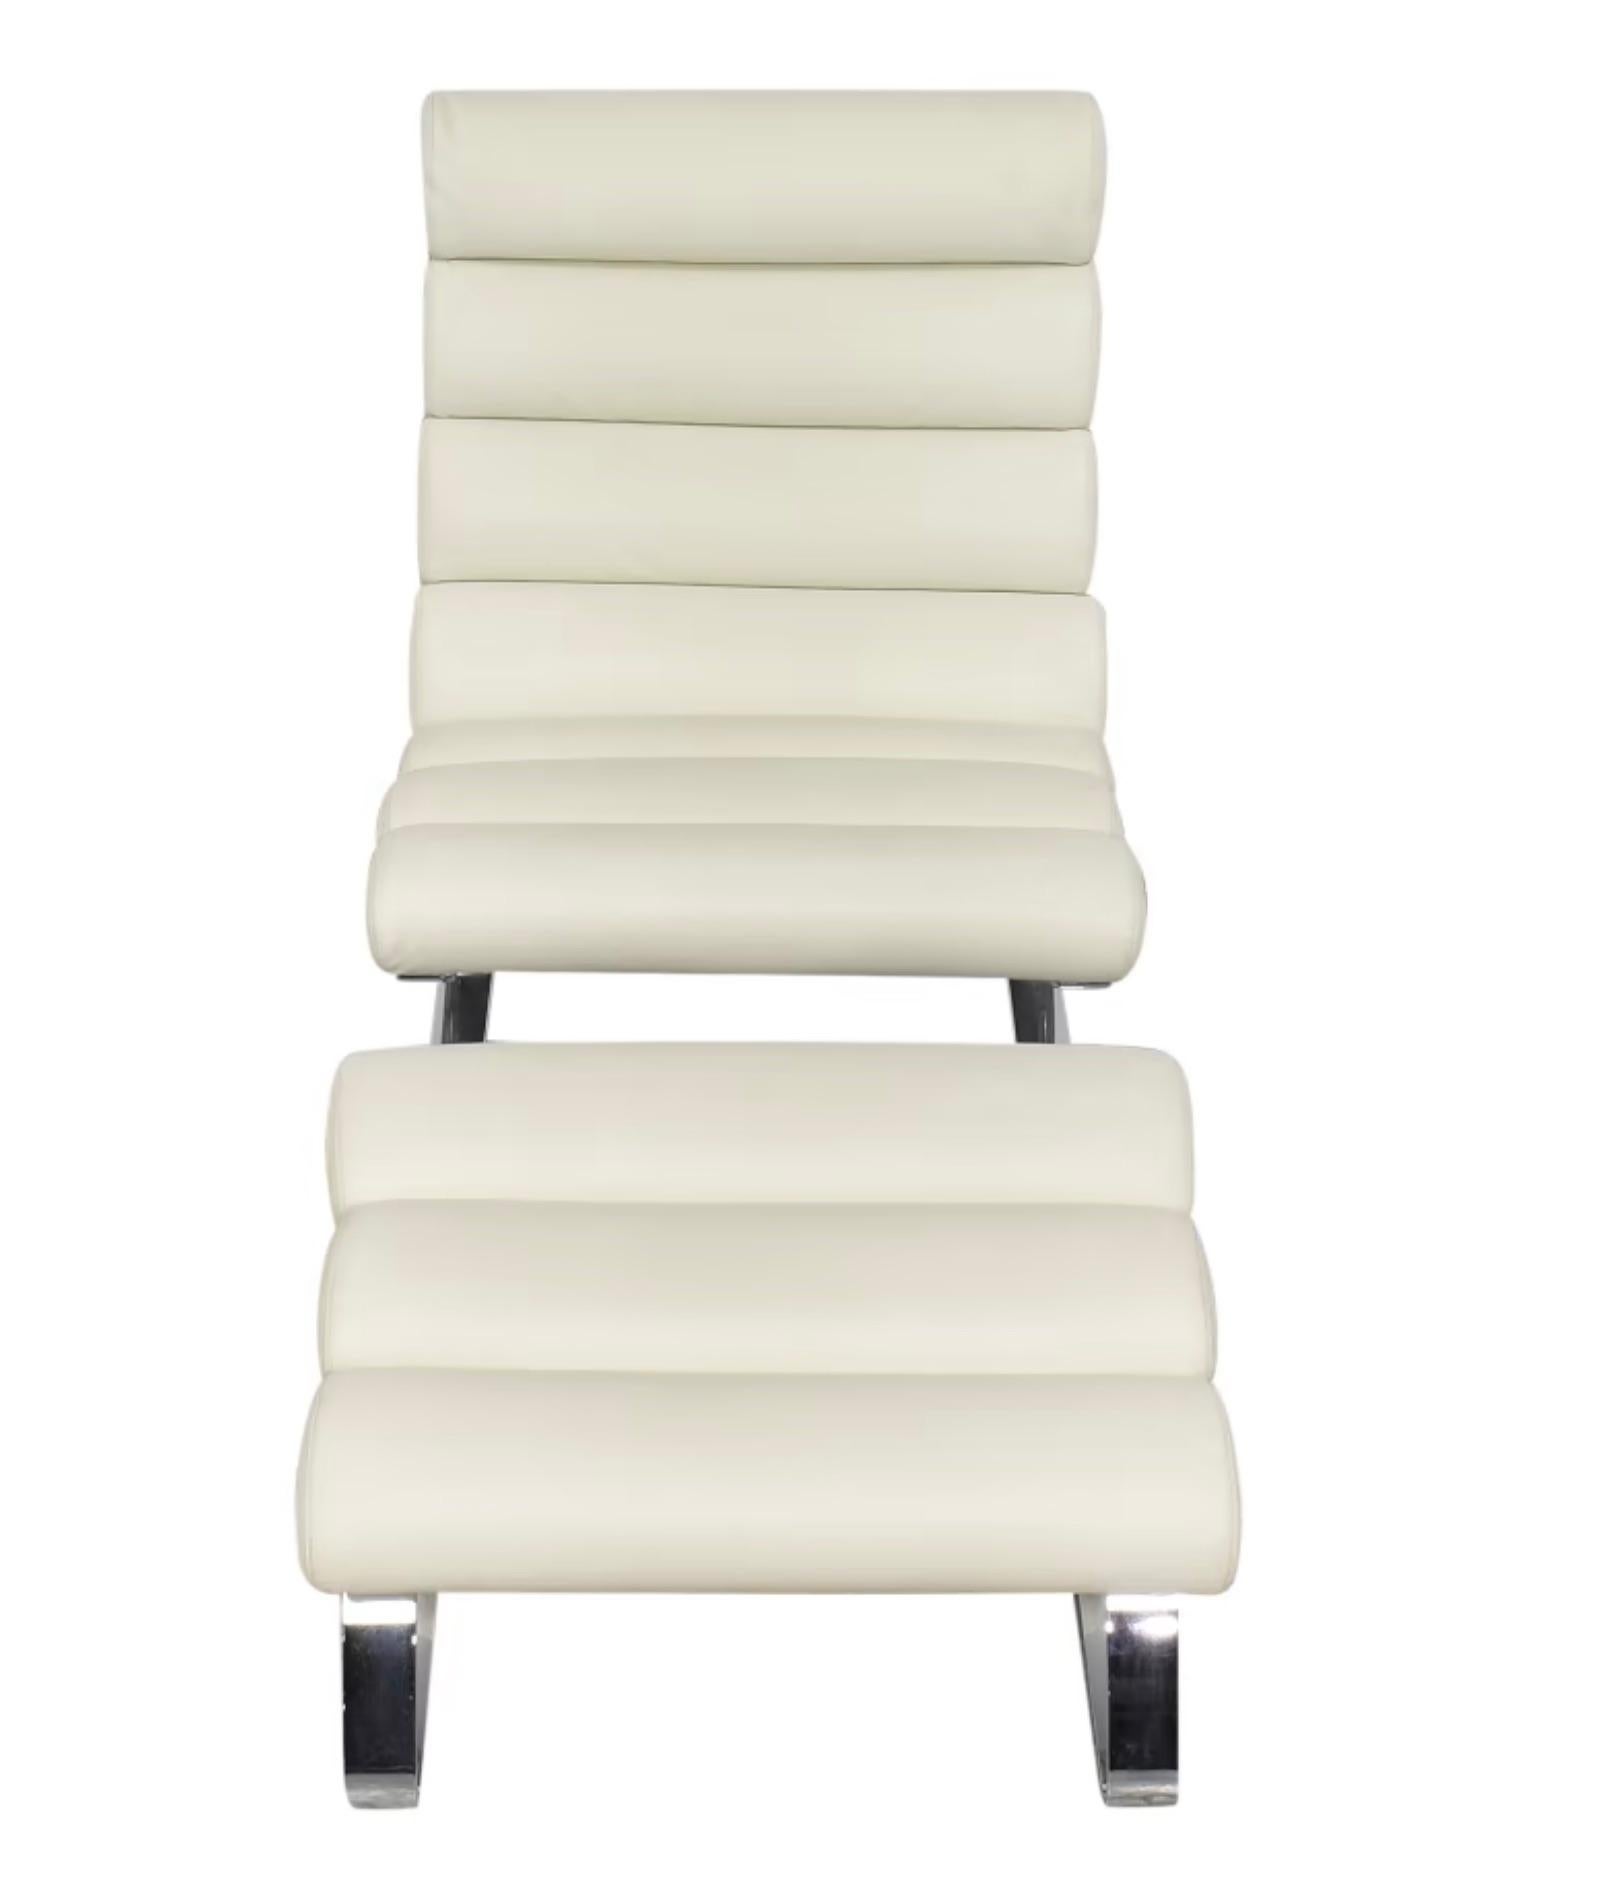 Schon 1976 war der Sinus-Sessel seiner Zeit voraus, mit schwingenden Federstahlwippen, deren Form ihm den Namen gab, und einer ebenso ungewöhnlichen Polsterung.  bequem. Die runden Polsterelemente von Sitz und Rückenlehne werden durch Lederriemen